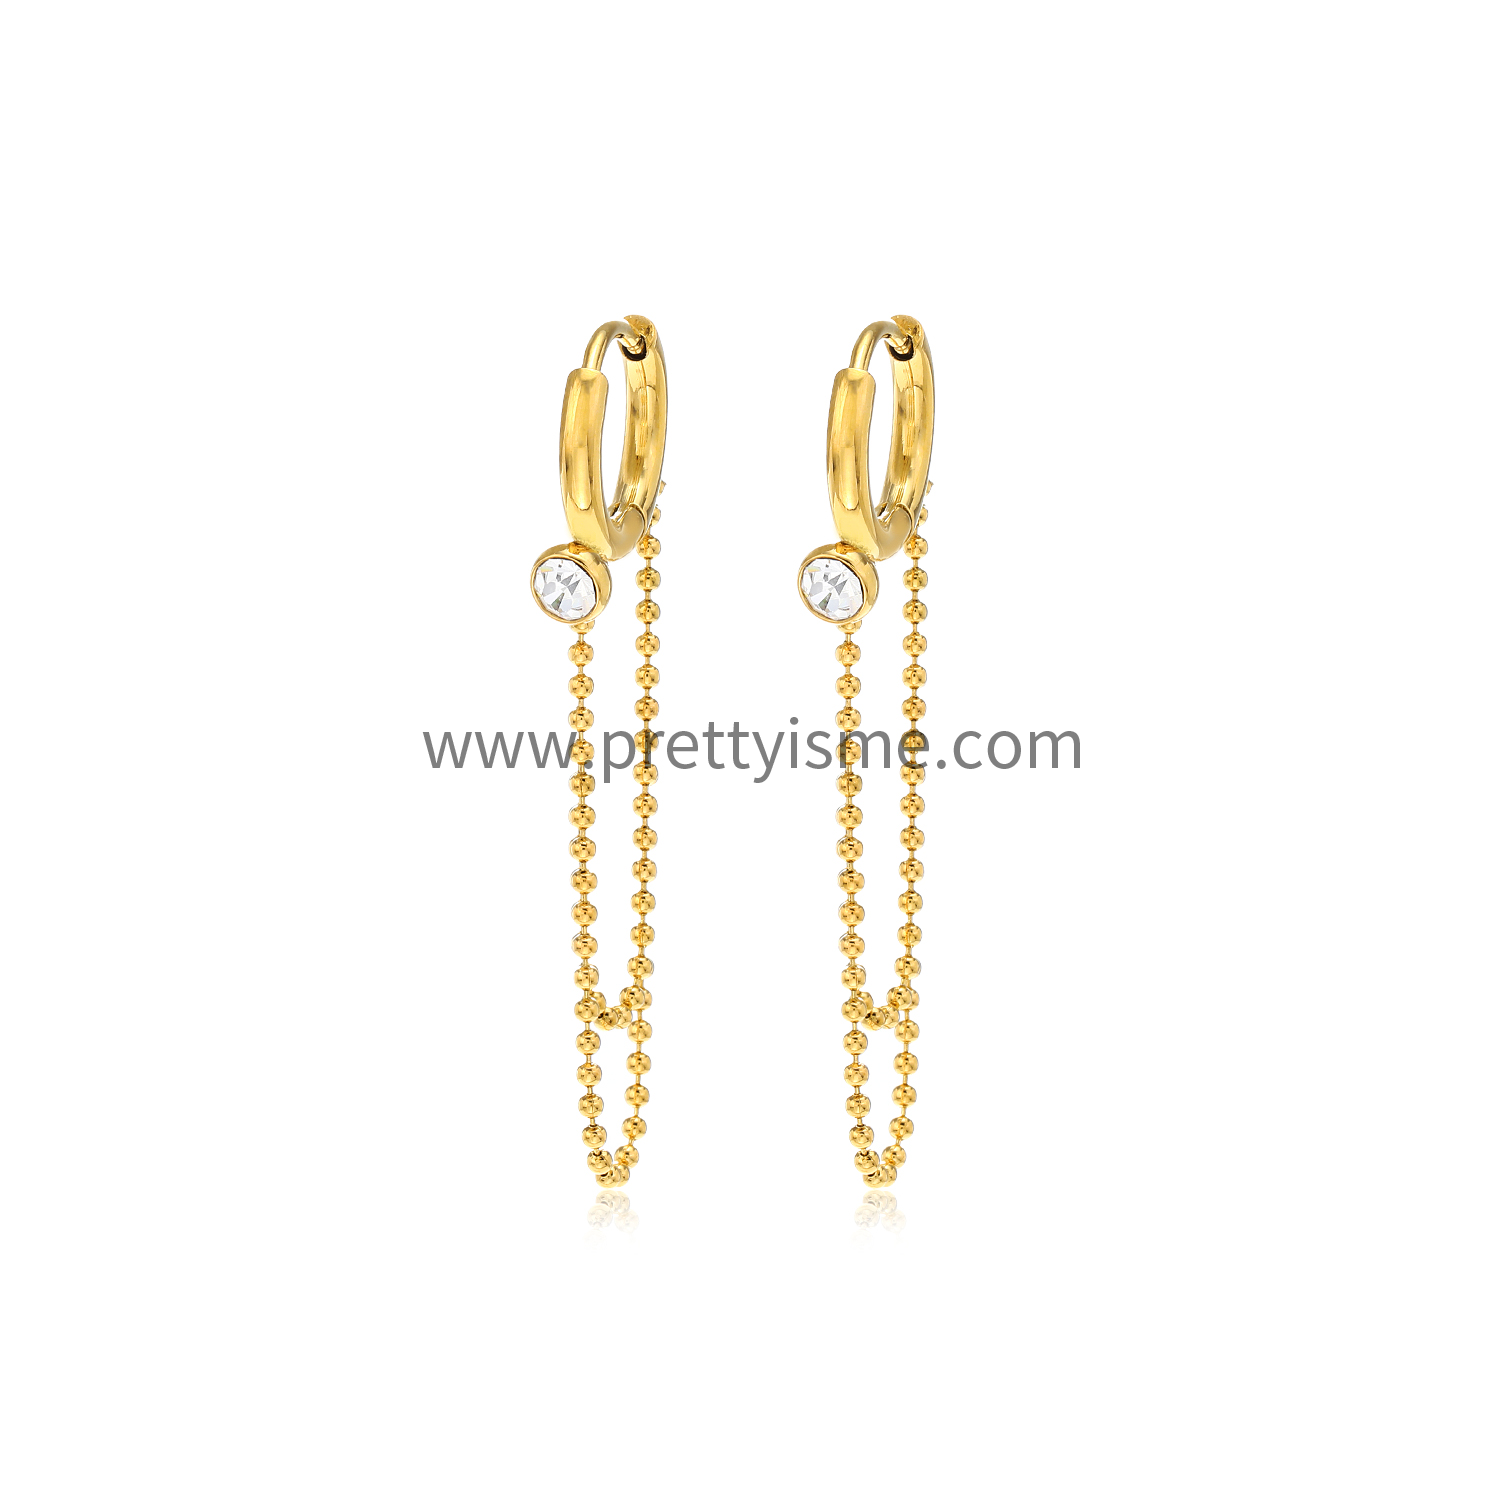 Long Chain Stainless Steel Earrings Gold Plated 18K Diamond Elegant Earrings (5).webp